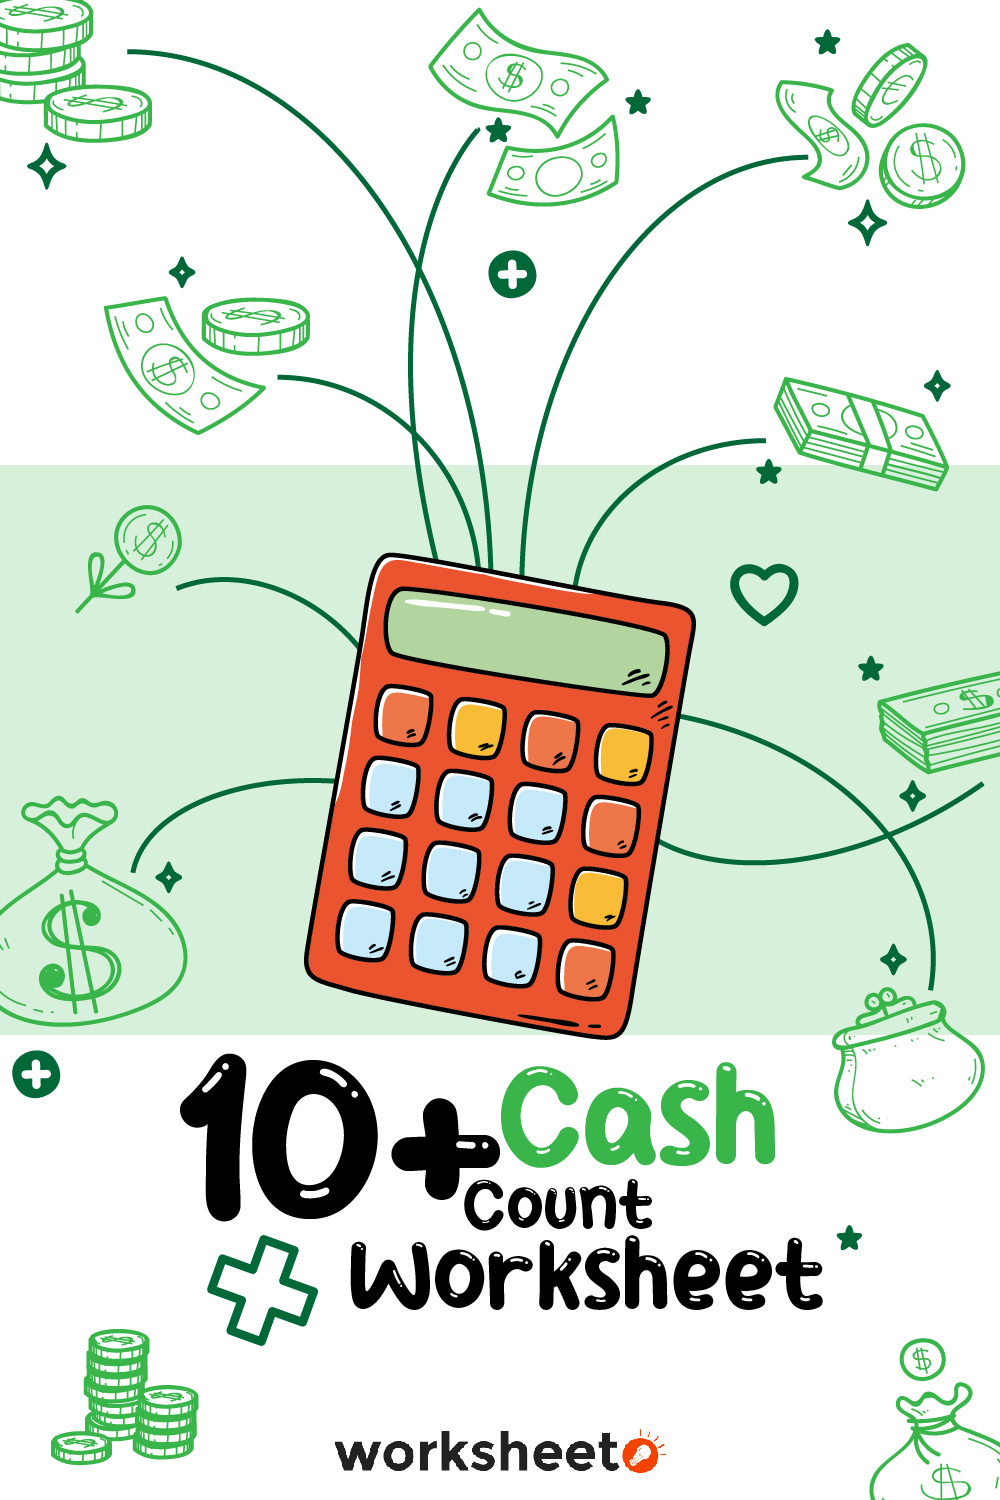 19 Images of Cash Count Worksheet